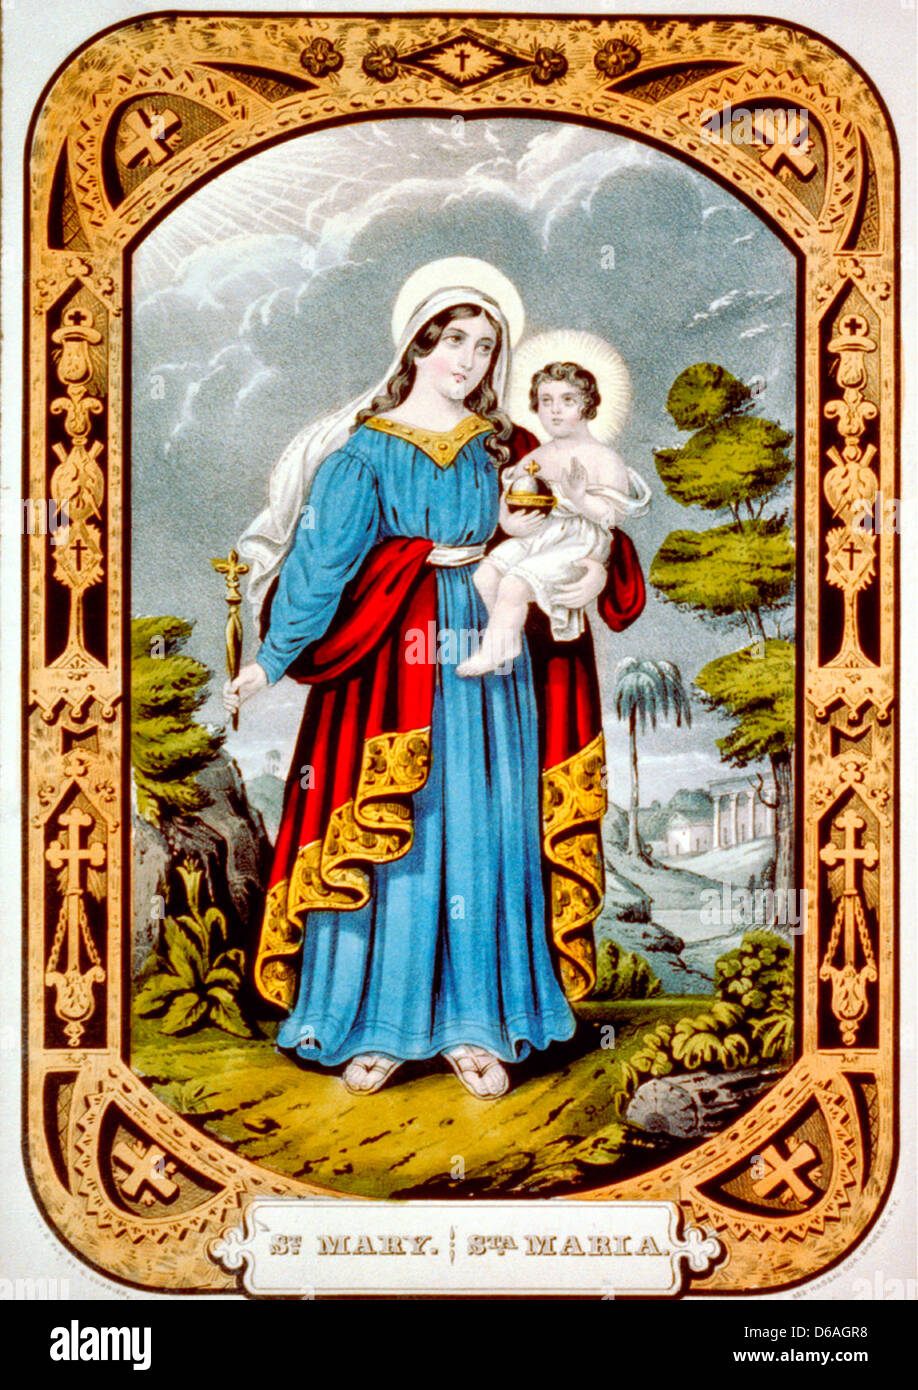 St Mary / Sta. Maria - Lithographie colorée à la main, vers 1846 Banque D'Images